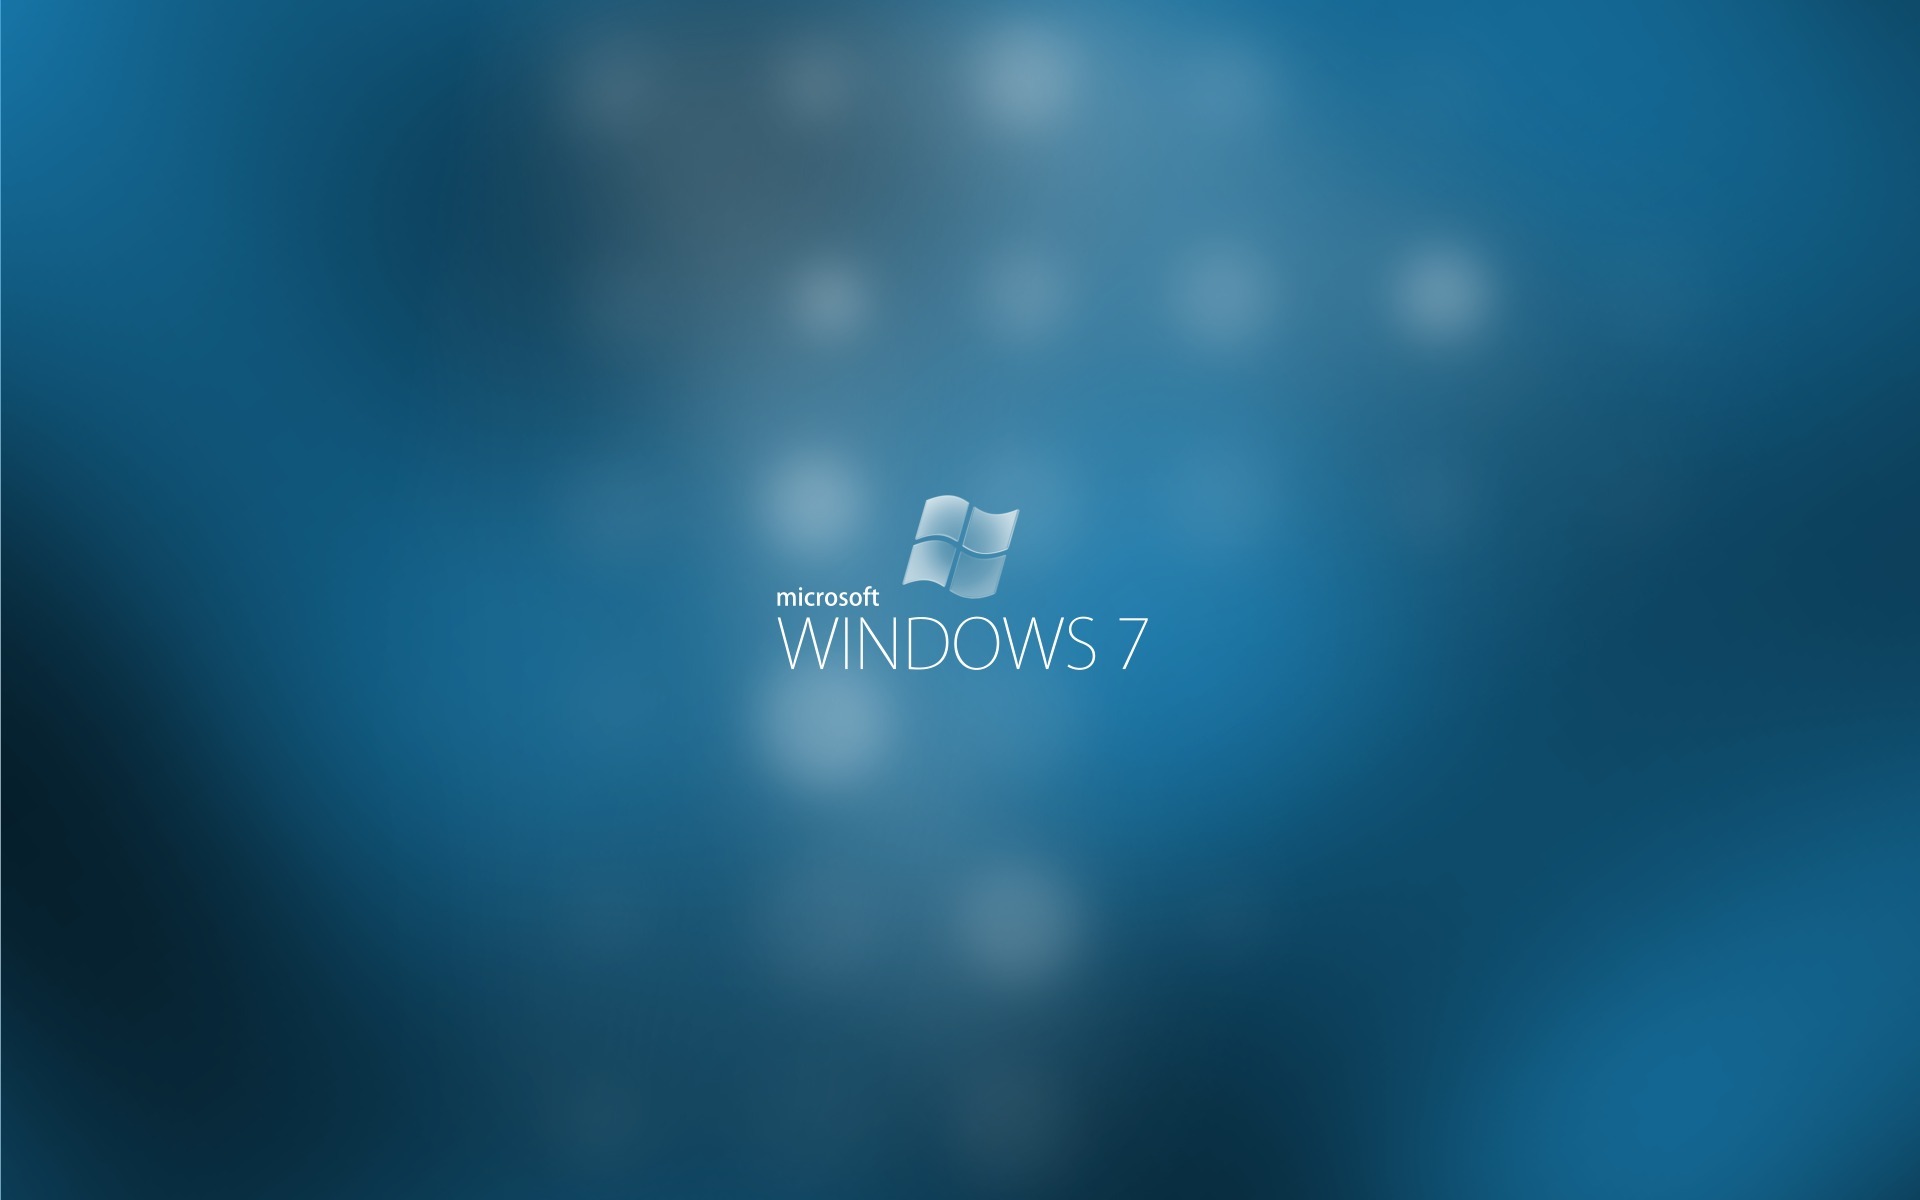 Скачать обои бесплатно Окна, Технологии, Windows 7 картинка на рабочий стол ПК